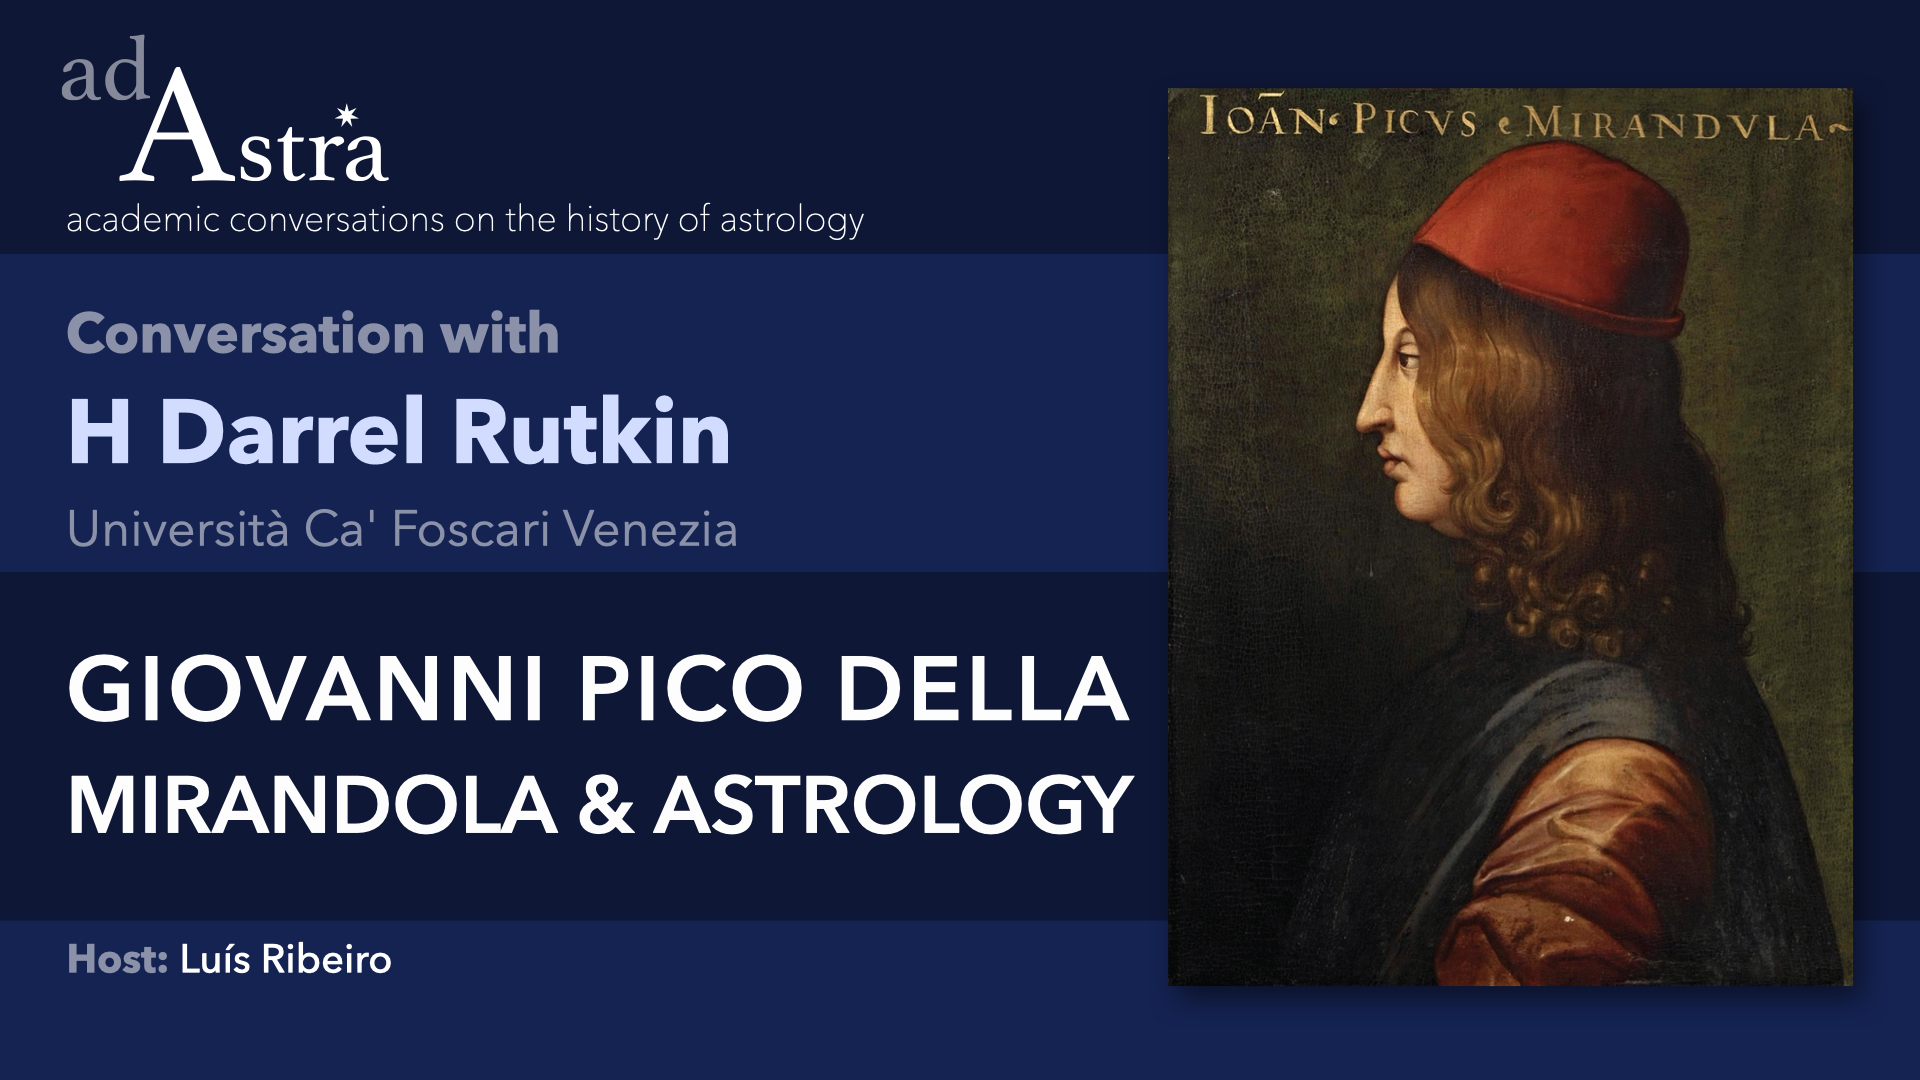 Giovanni Pico Della Mirandola & Astrology with H Darrel Rutkin